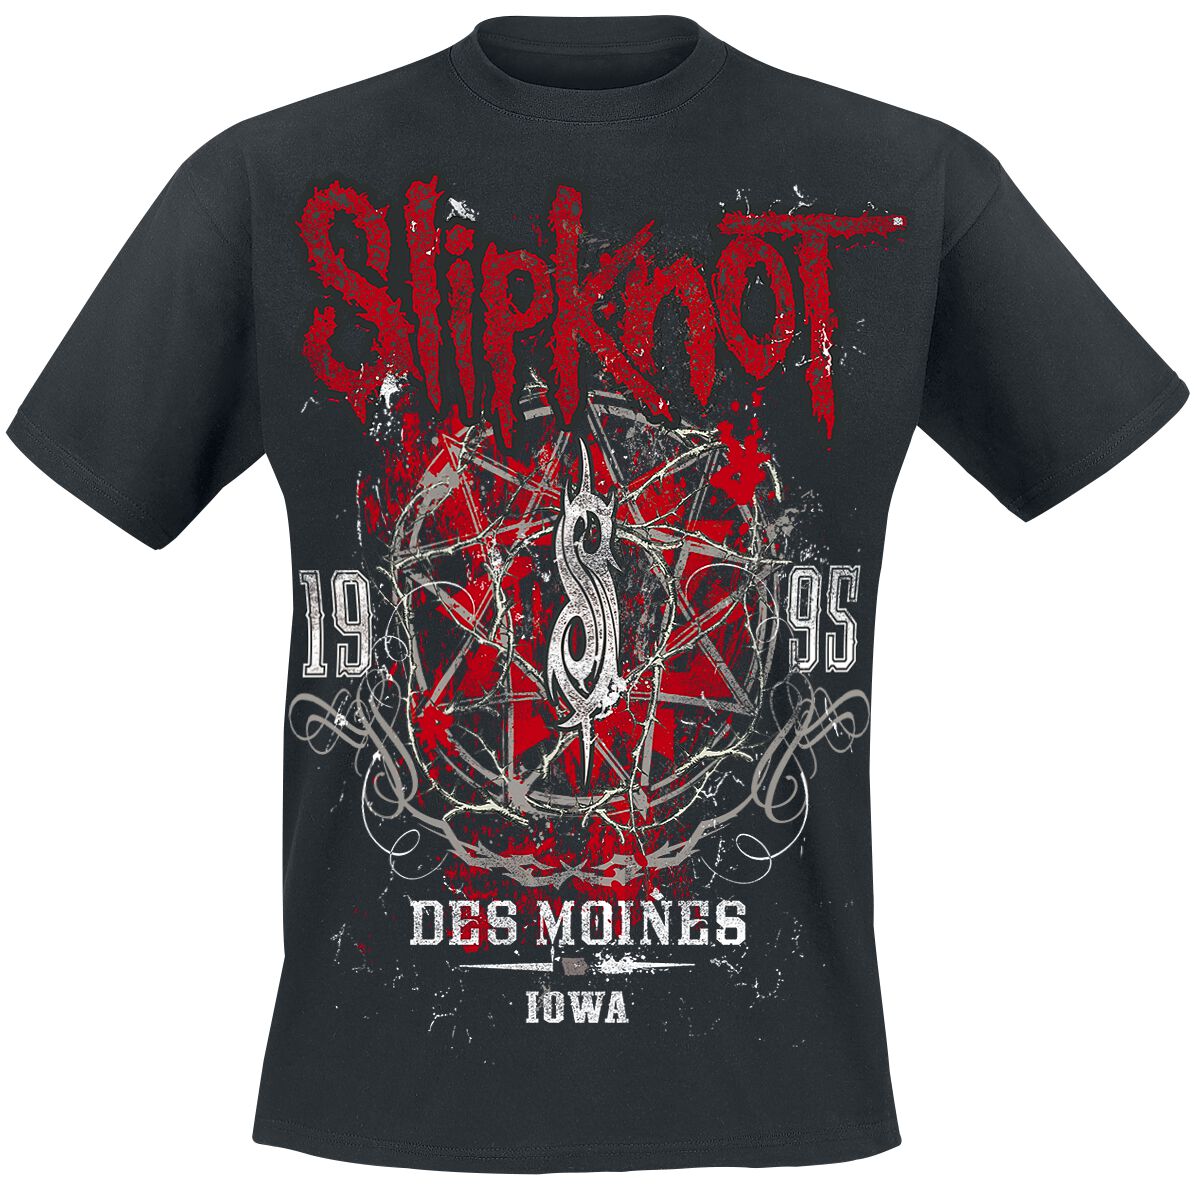 Slipknot T-Shirt - Iowa Star - S bis 5XL - für Männer - Größe XXL - schwarz  - Lizenziertes Merchandise!